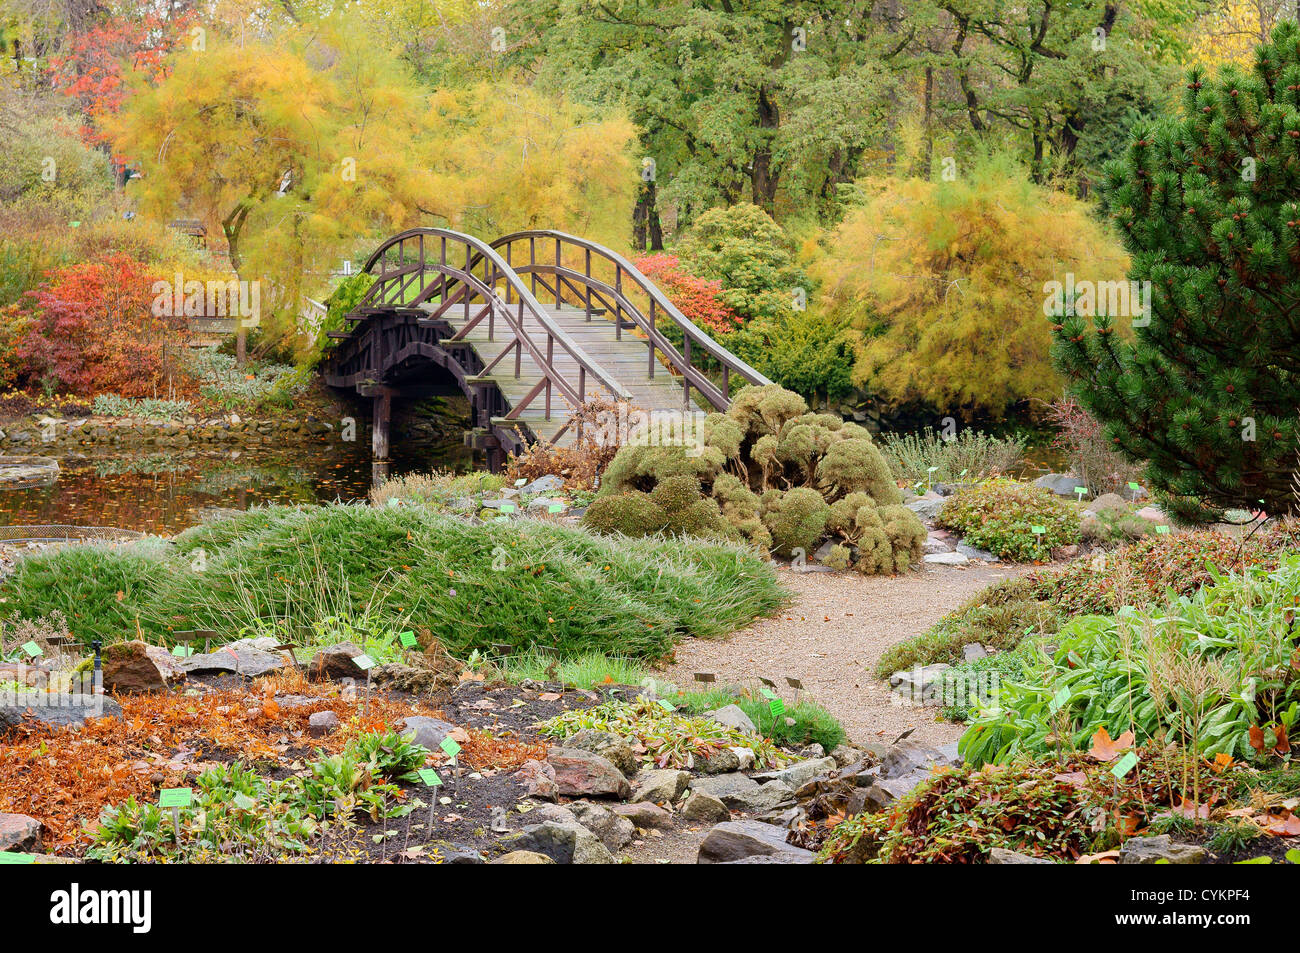 Jardín botánico de Wroclaw en coloridas hojas de otoño Foto de stock